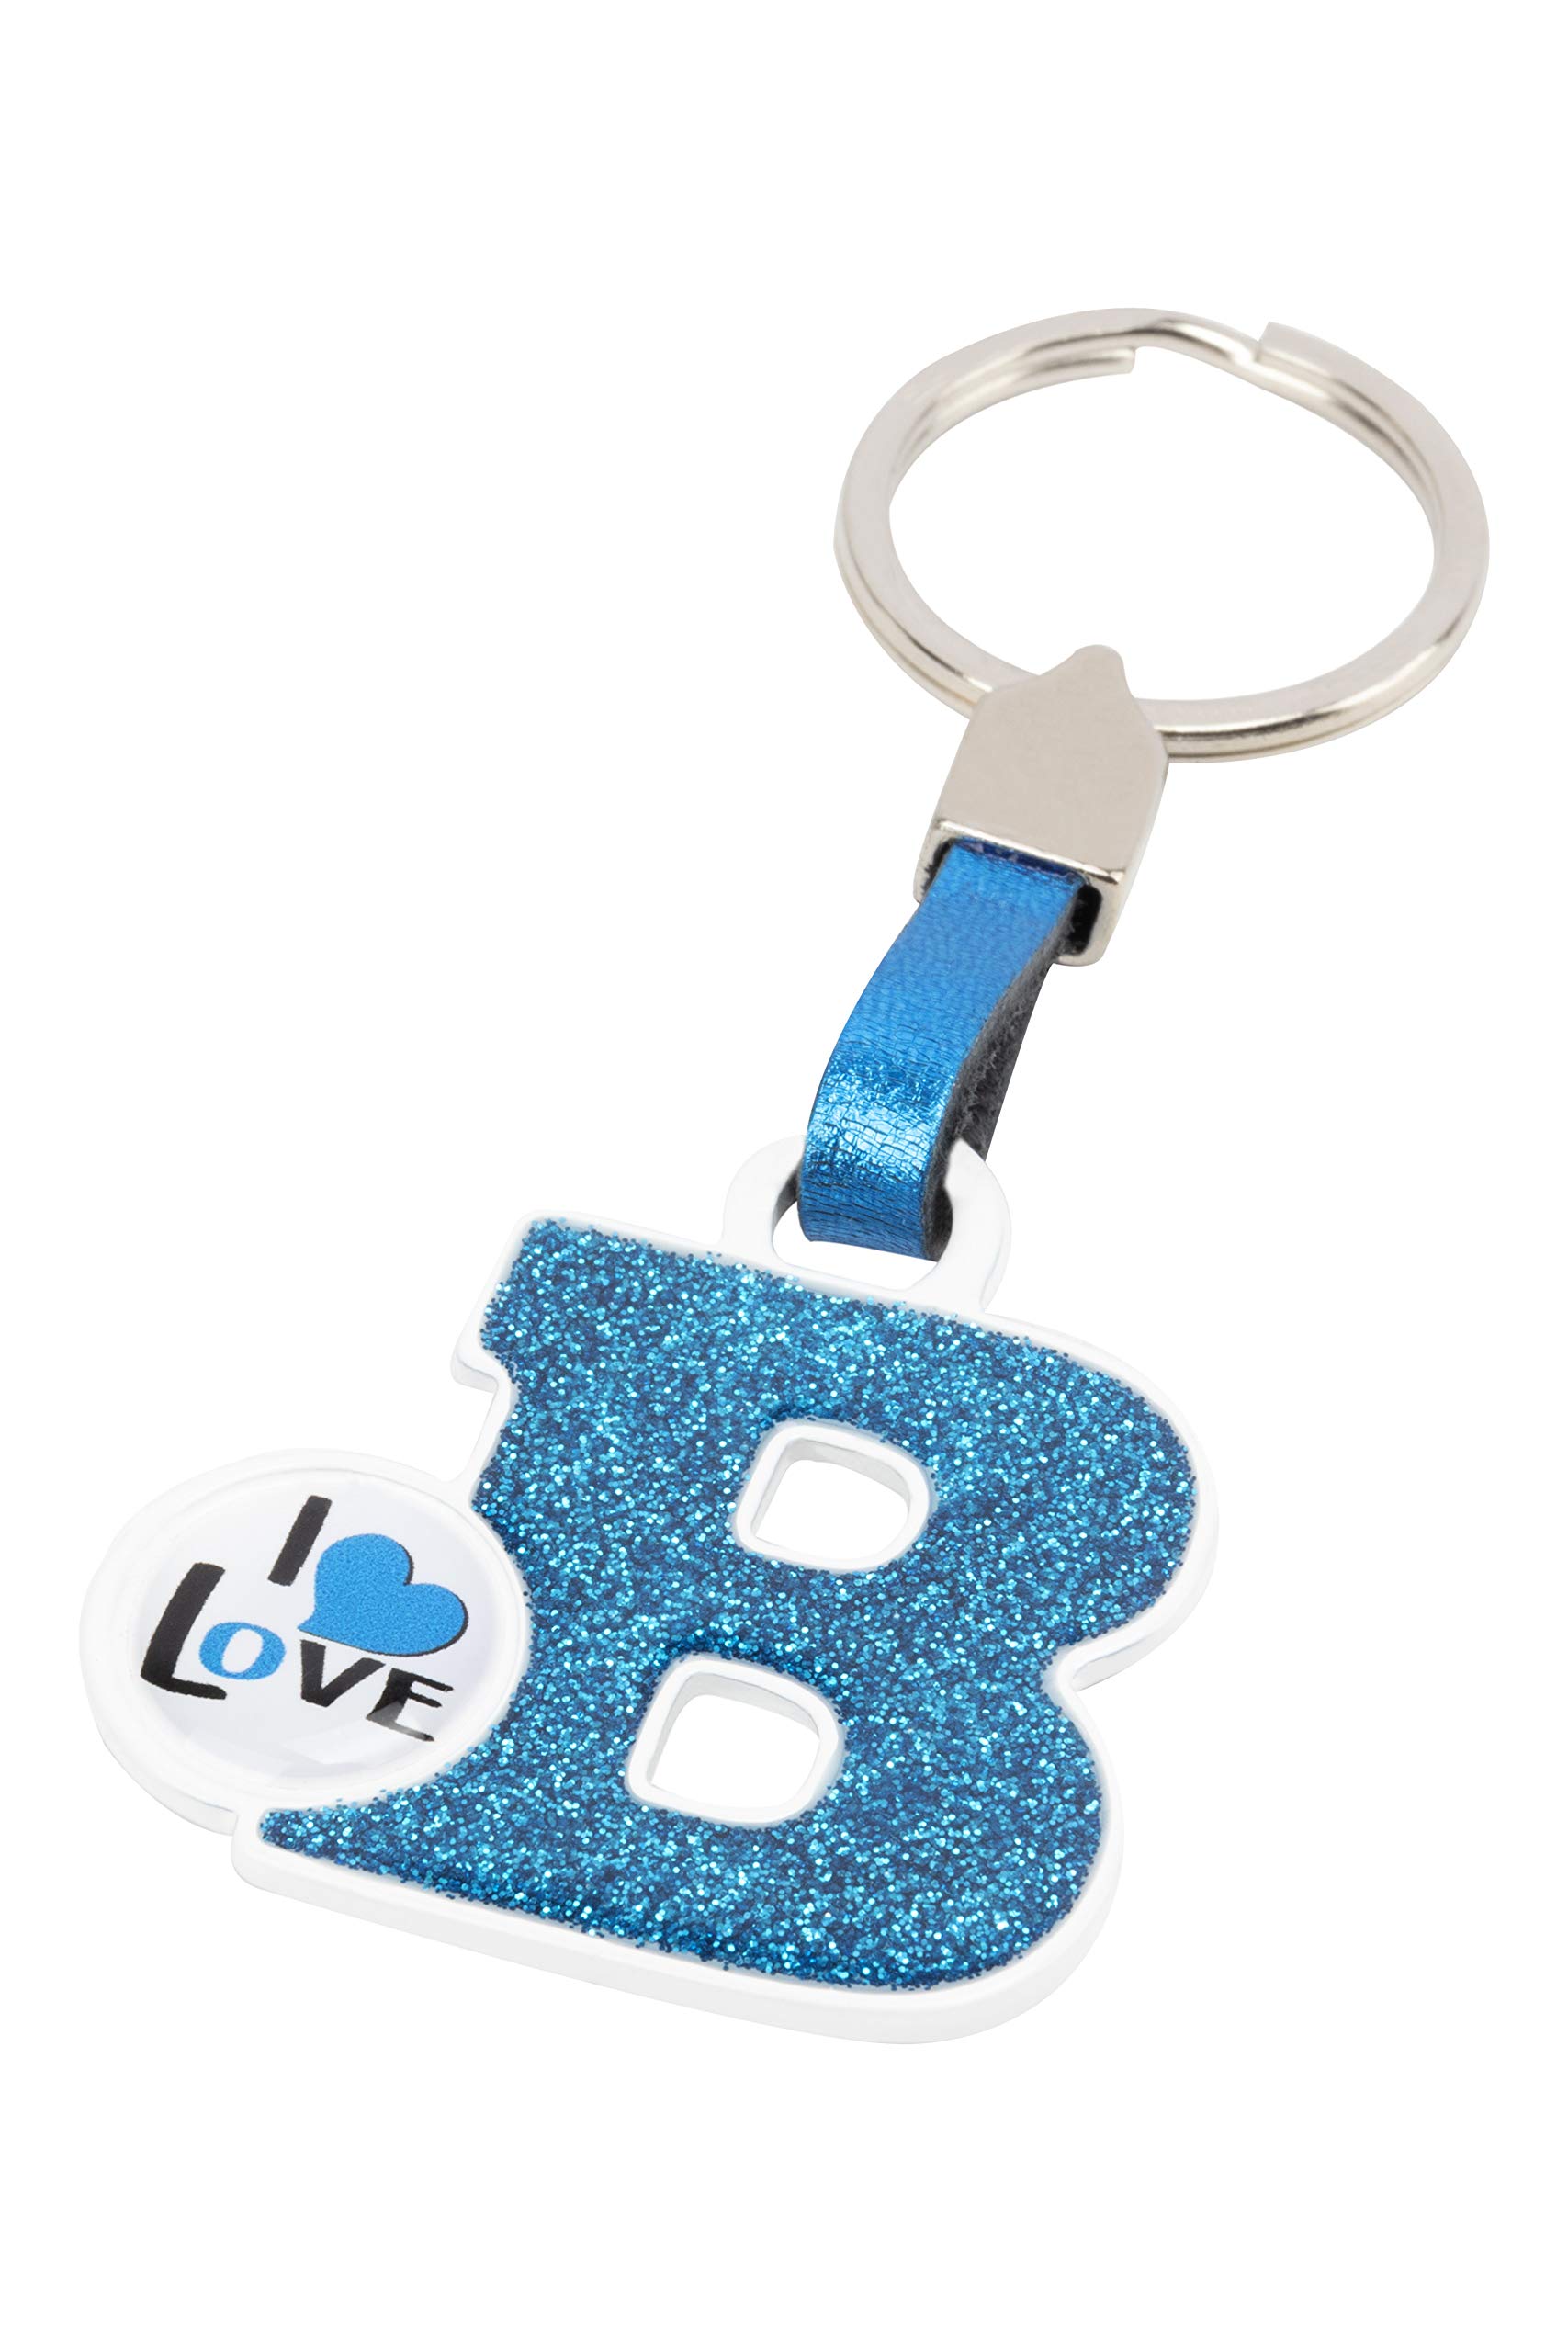 BC CORONA Metallischer Schlüsselanhänger I Love; Buchstabe B; Blau Farbe. von BC CORONA